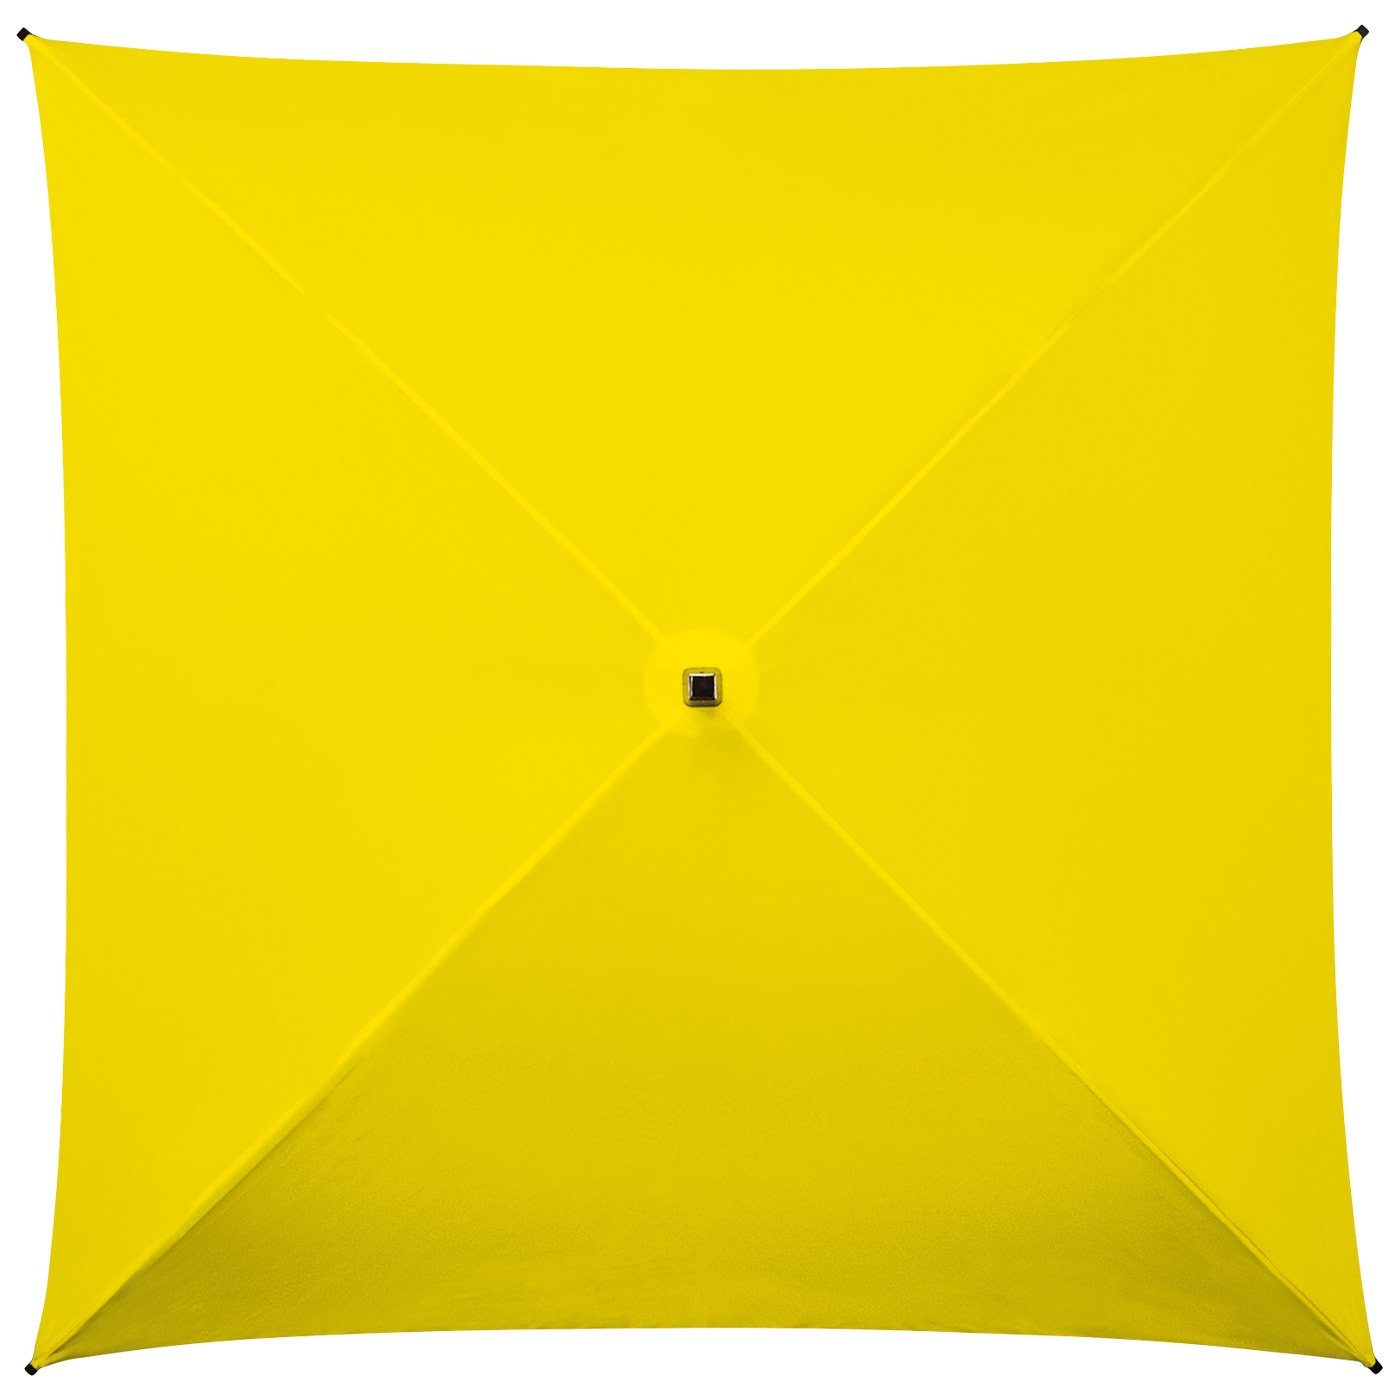 All Regenschirm ganz quadratischer Langregenschirm besondere voll Regenschirm, Impliva Square® gelb der